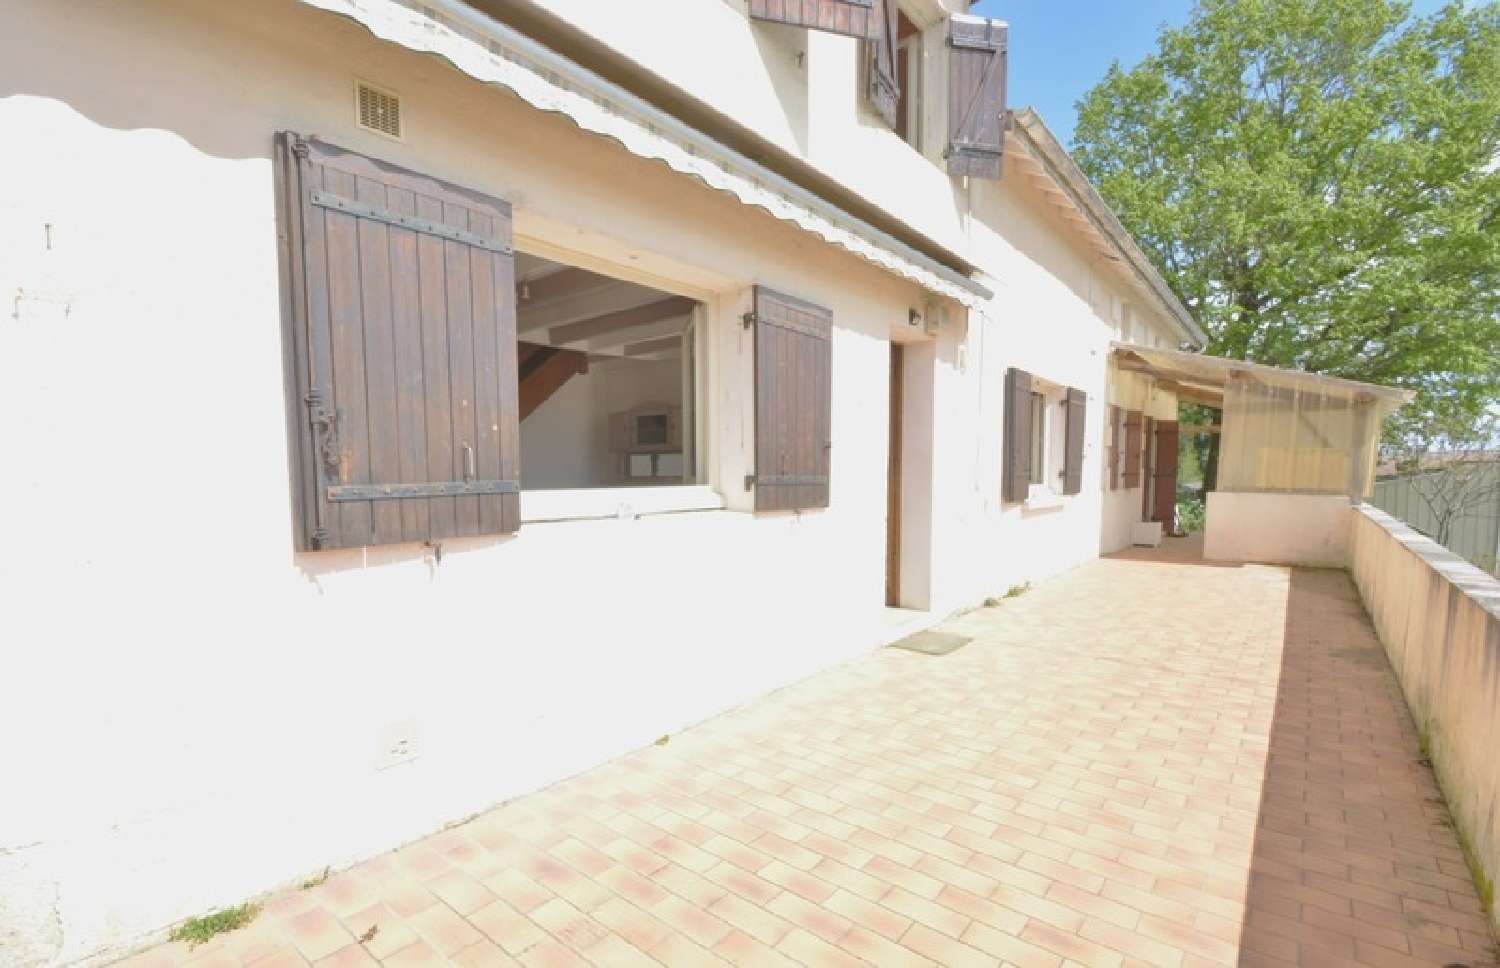  à vendre maison Saint-Seurin-sur-l'Isle Gironde 1